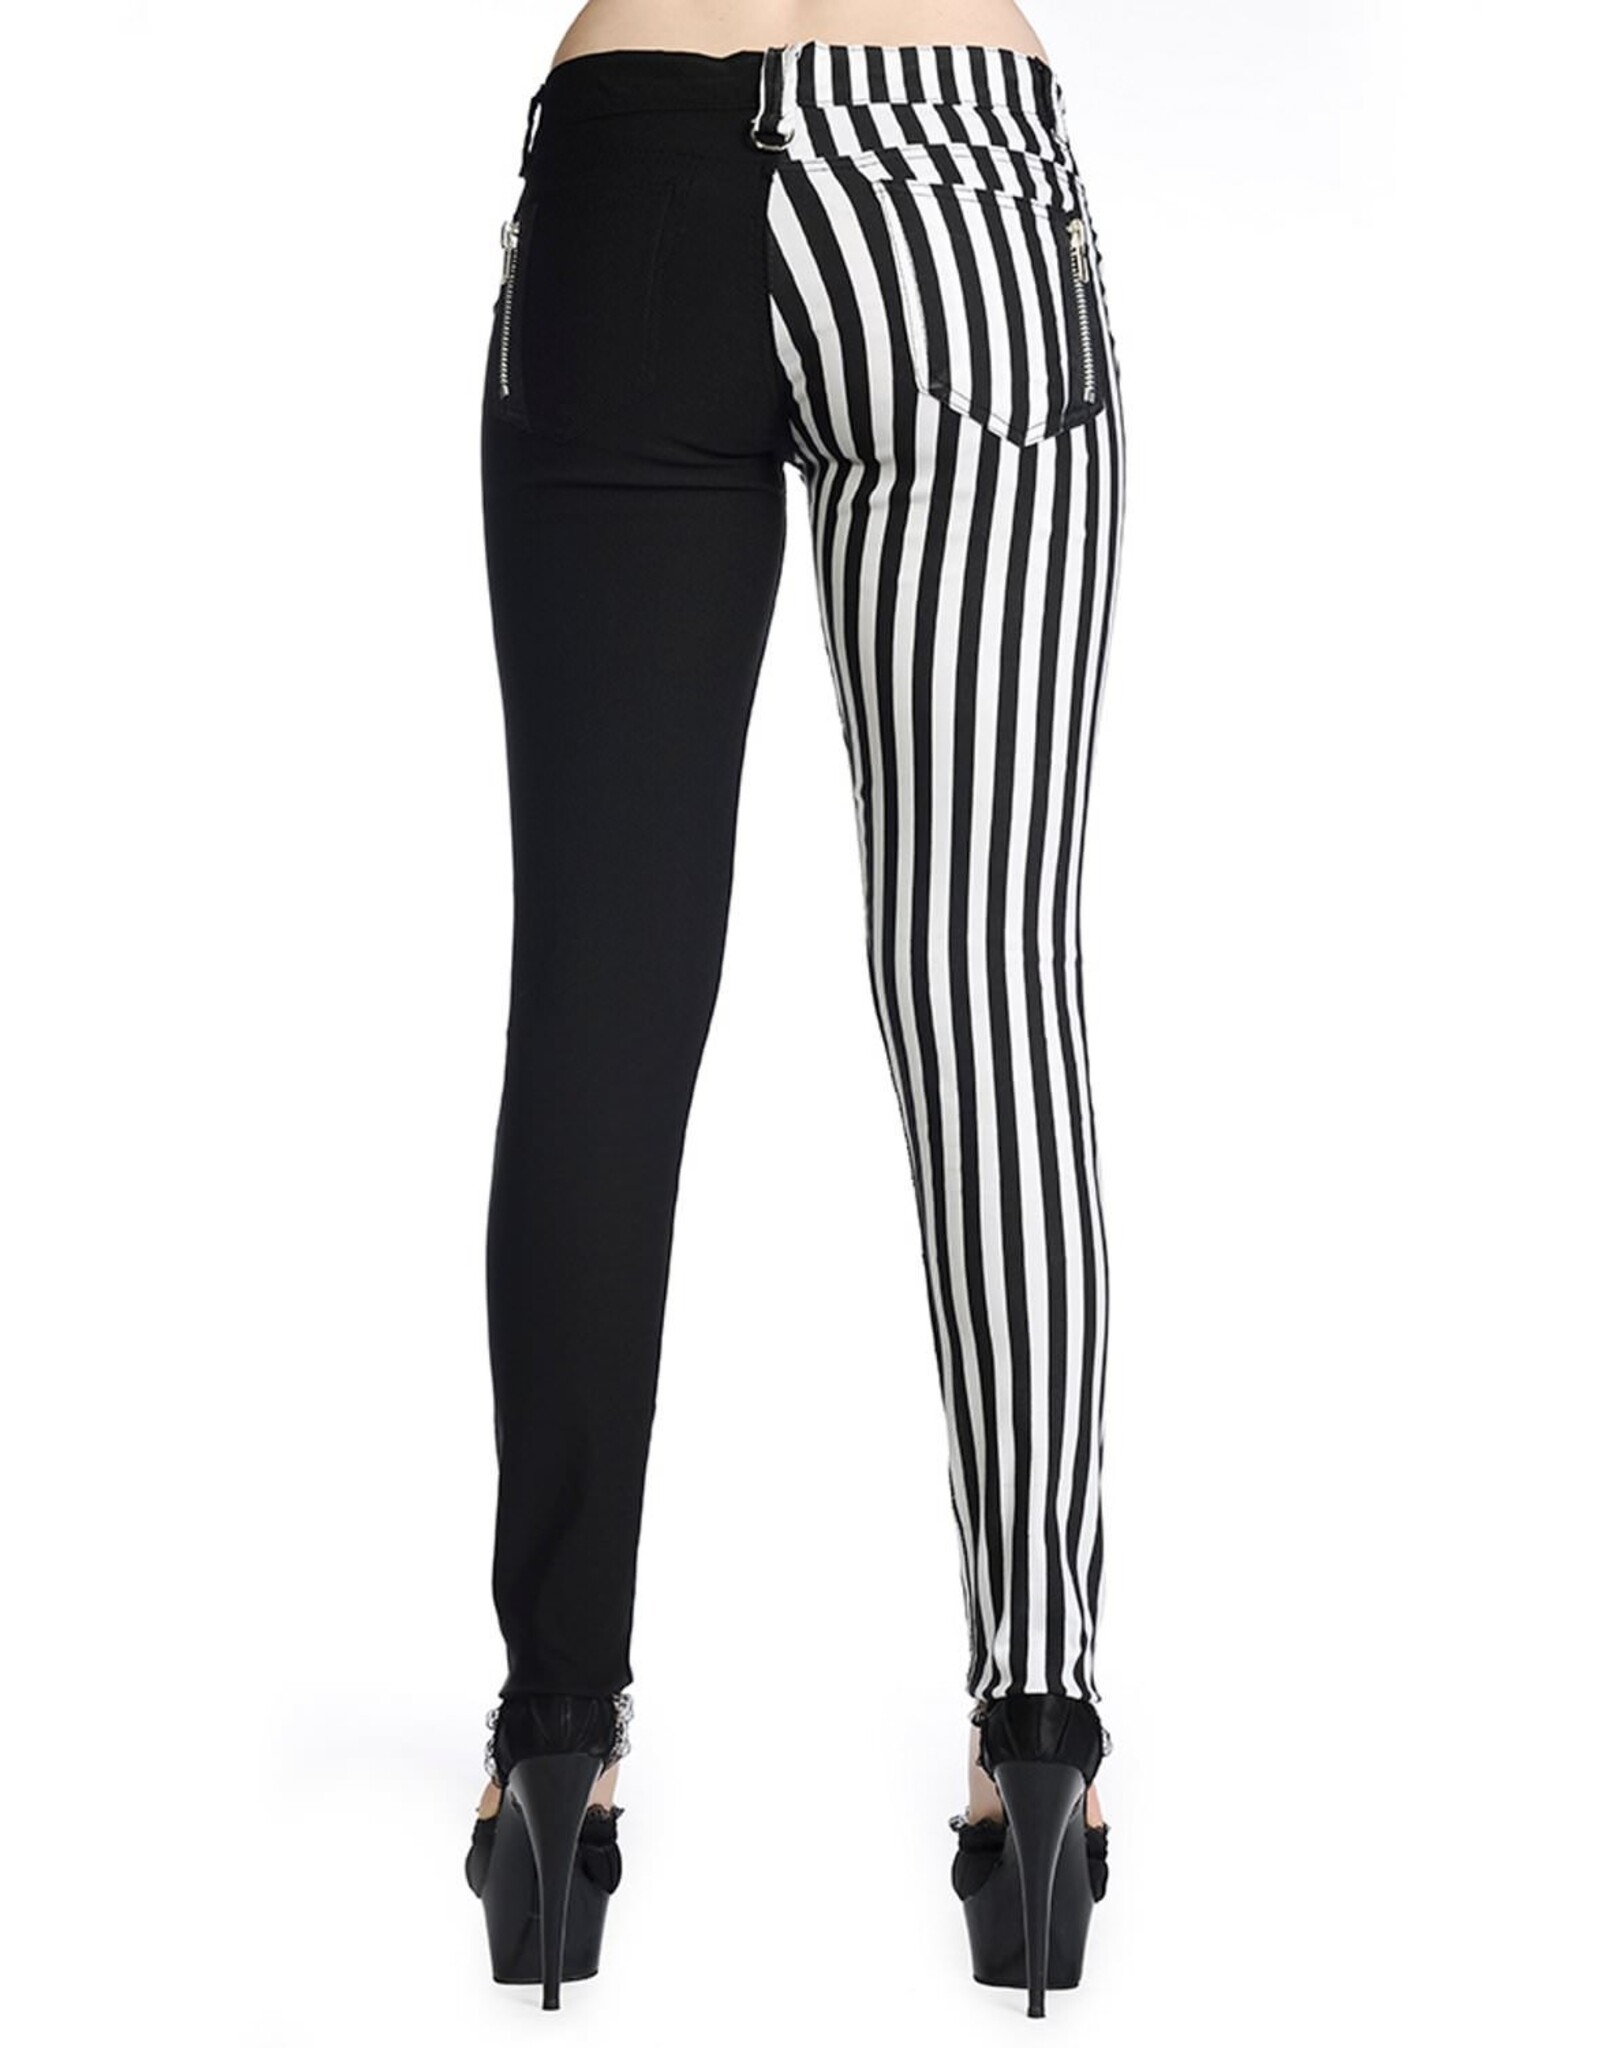 Half Striped Black/White Pants - TBN416STR